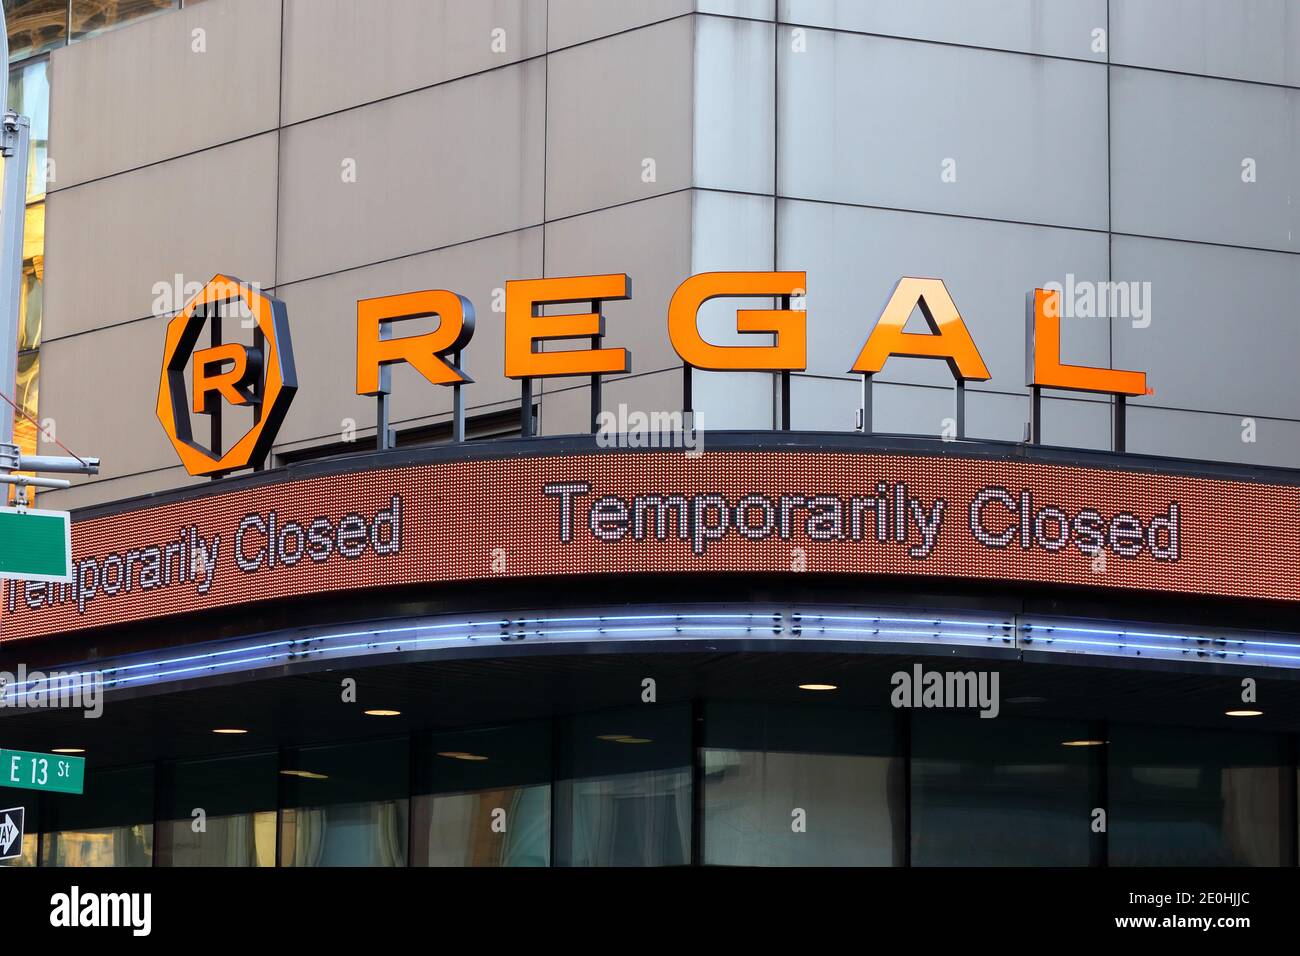 Ein Regal Cinemas-Kino in der Nähe des Union Square in Manhattan, New York, ist wegen der aktuellen Covid-19-Pandemie vorübergehend geschlossen. Stockfoto